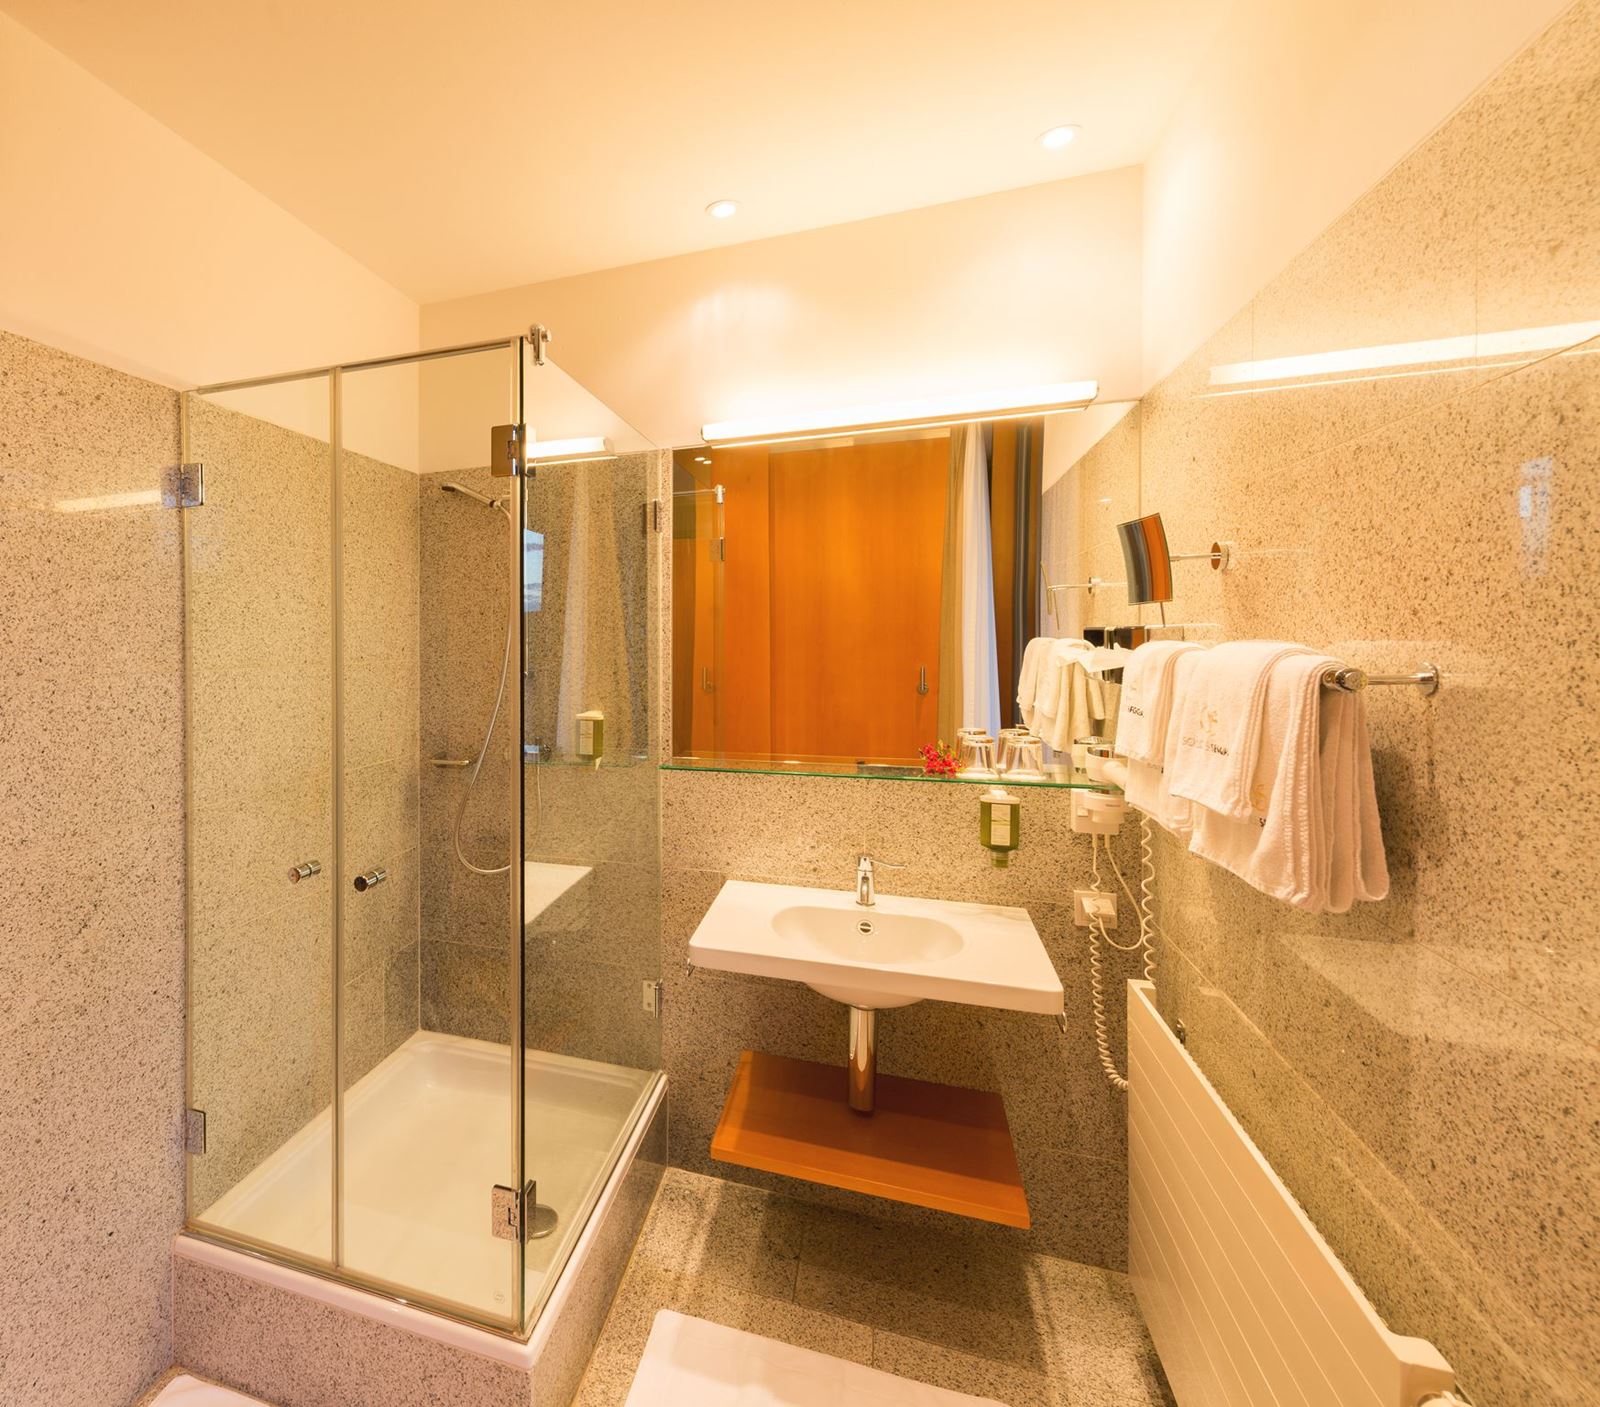 Badezimmer eines Standard Einzelzimmer mit Dusche, Waschbecken, Spiegel, aufgehängten Handtüchern